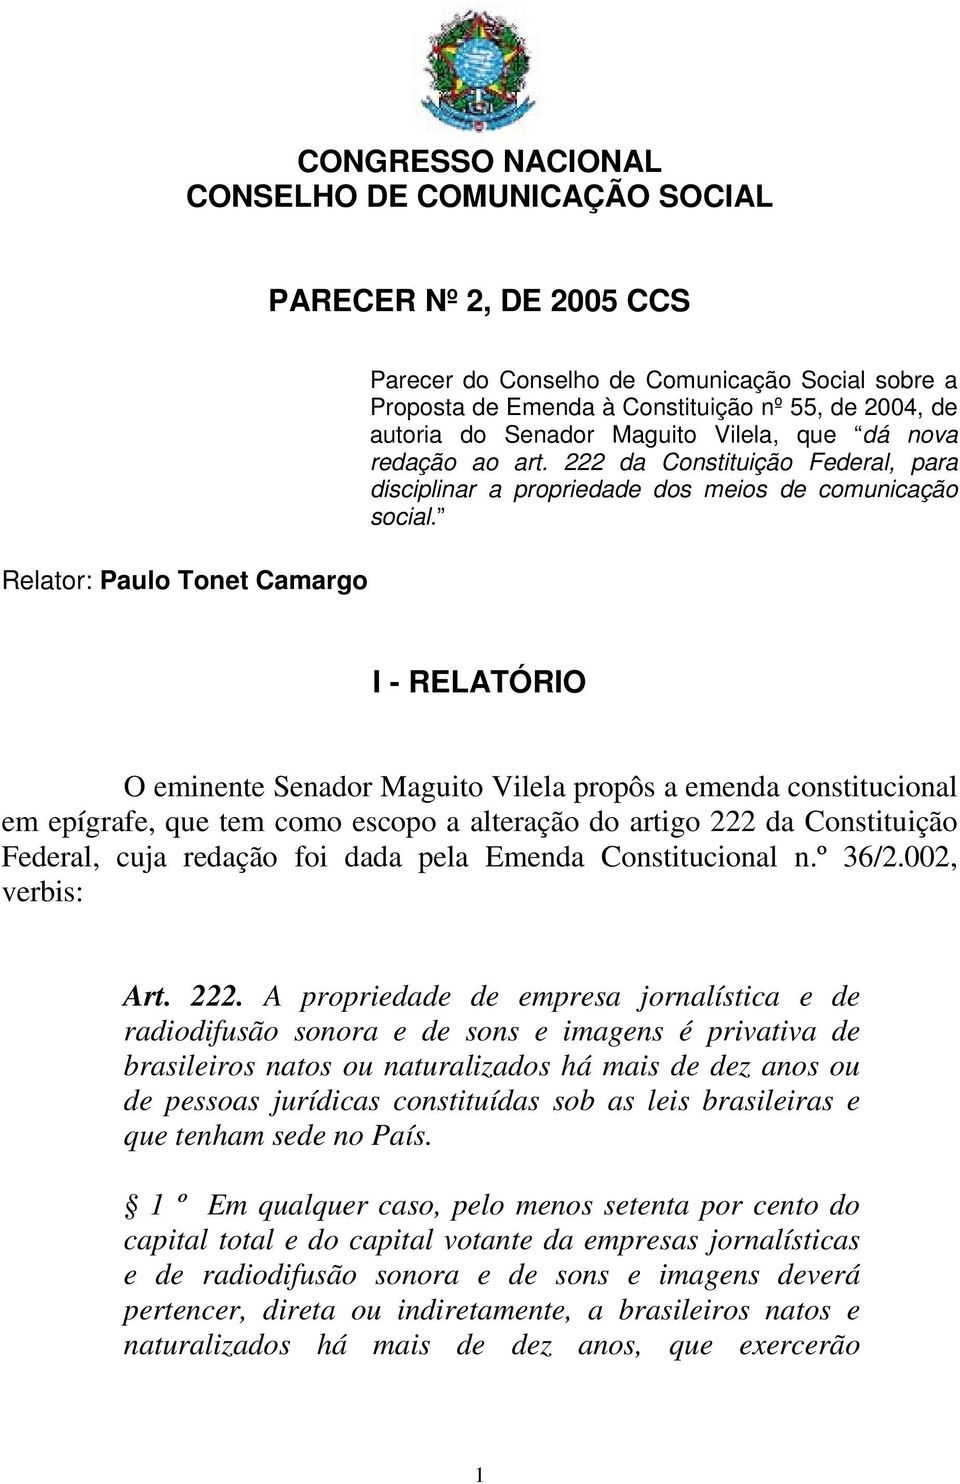 I - RELATÓRIO O eminente Senador Maguito Vilela propôs a emenda constitucional em epígrafe, que tem como escopo a alteração do artigo 222 da Constituição Federal, cuja redação foi dada pela Emenda